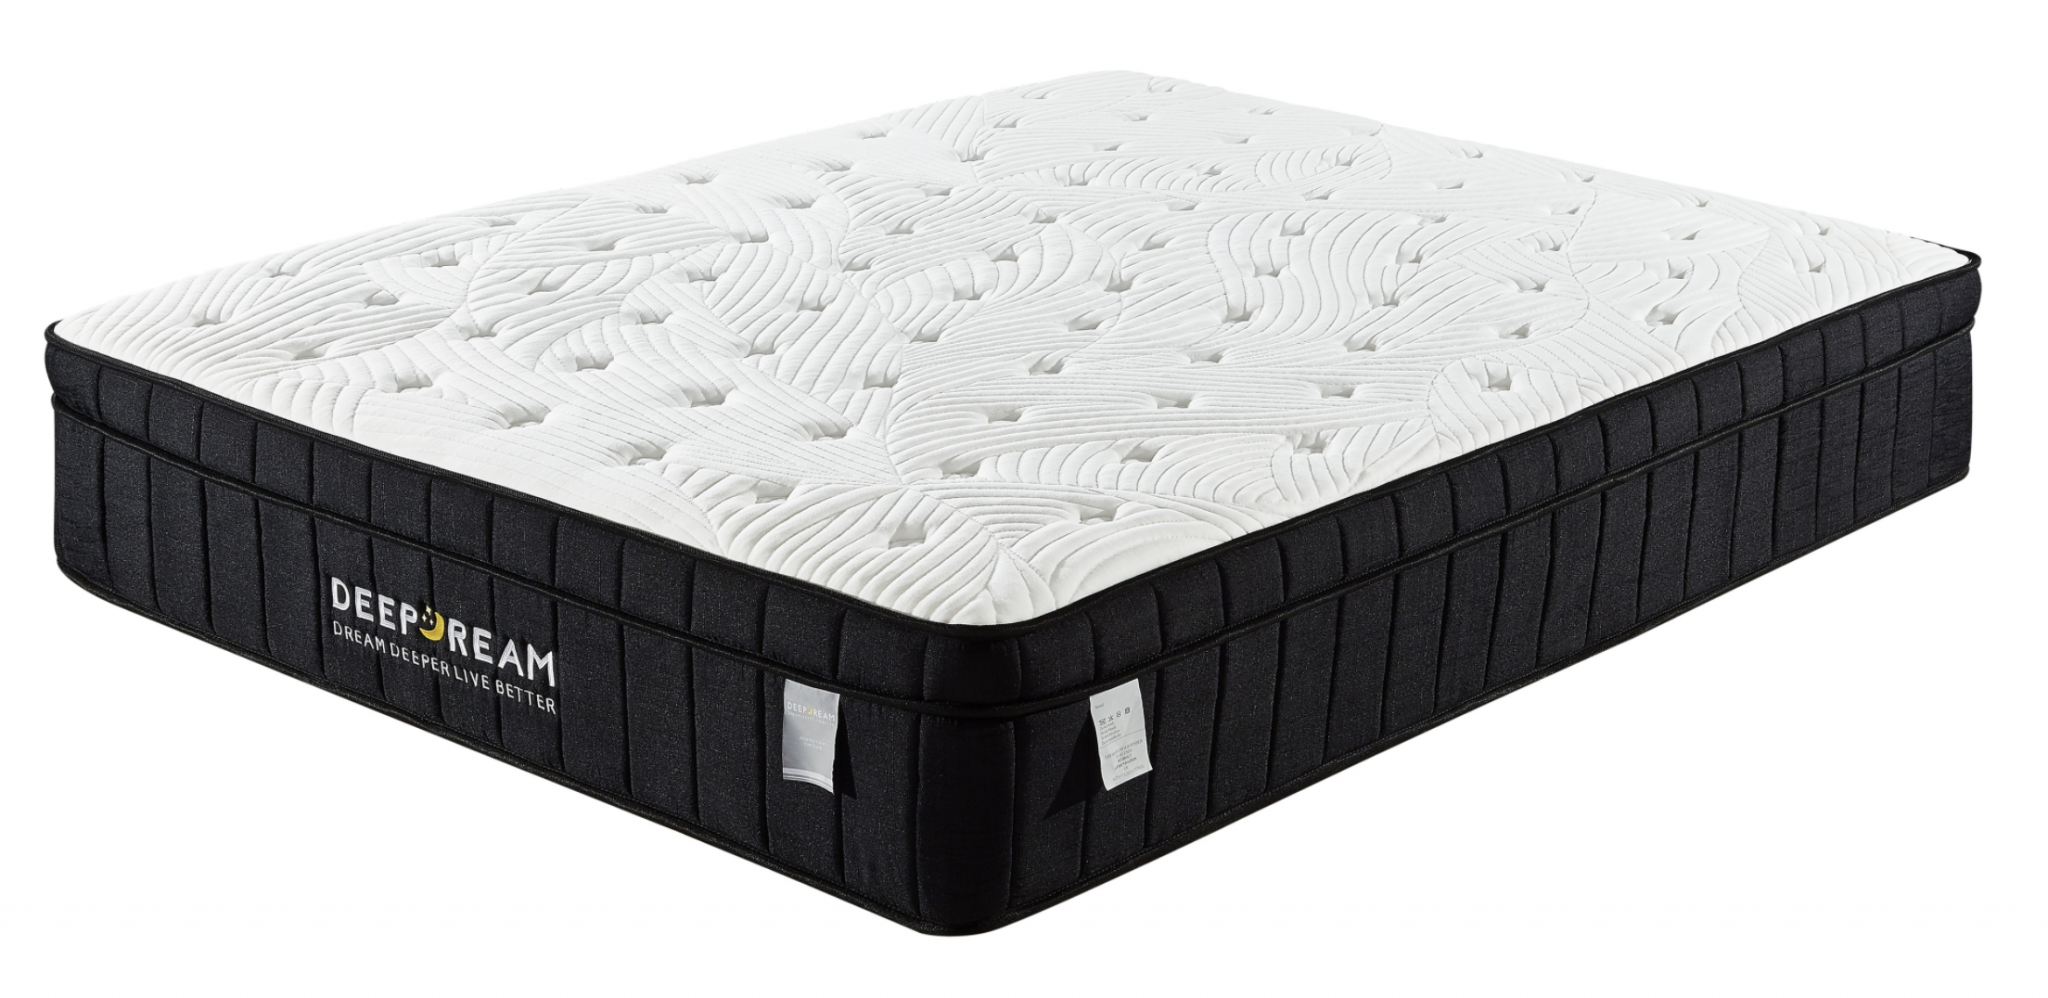 deep dream super firm mattress